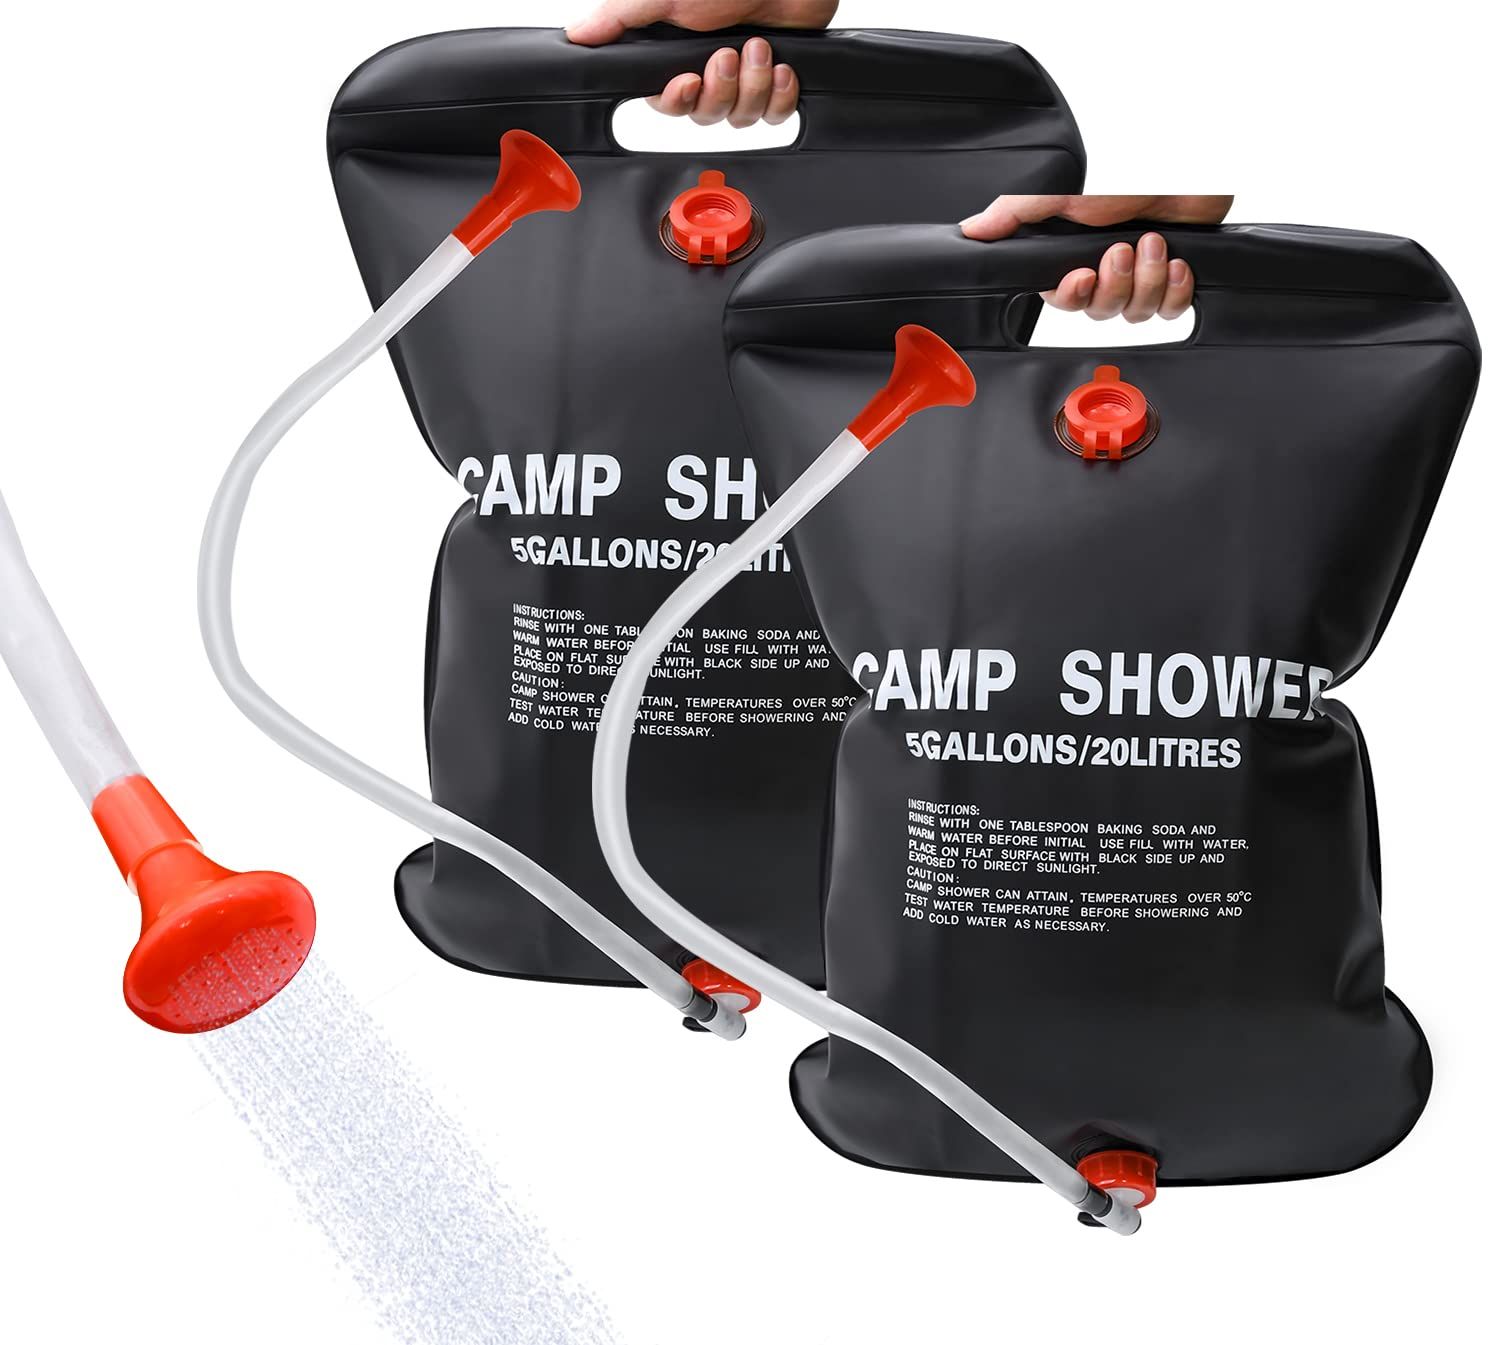 SZSS ソーラーシャワーバッグ 2パック 5ガロン/20L キャンピングシャワーバッグ ポータブルシャワーバッグ 取り外し可能なホース付き オン/オフ切り替え可能なシャワーヘッド キャンプ ビーチ 水泳 アウトドア 旅行